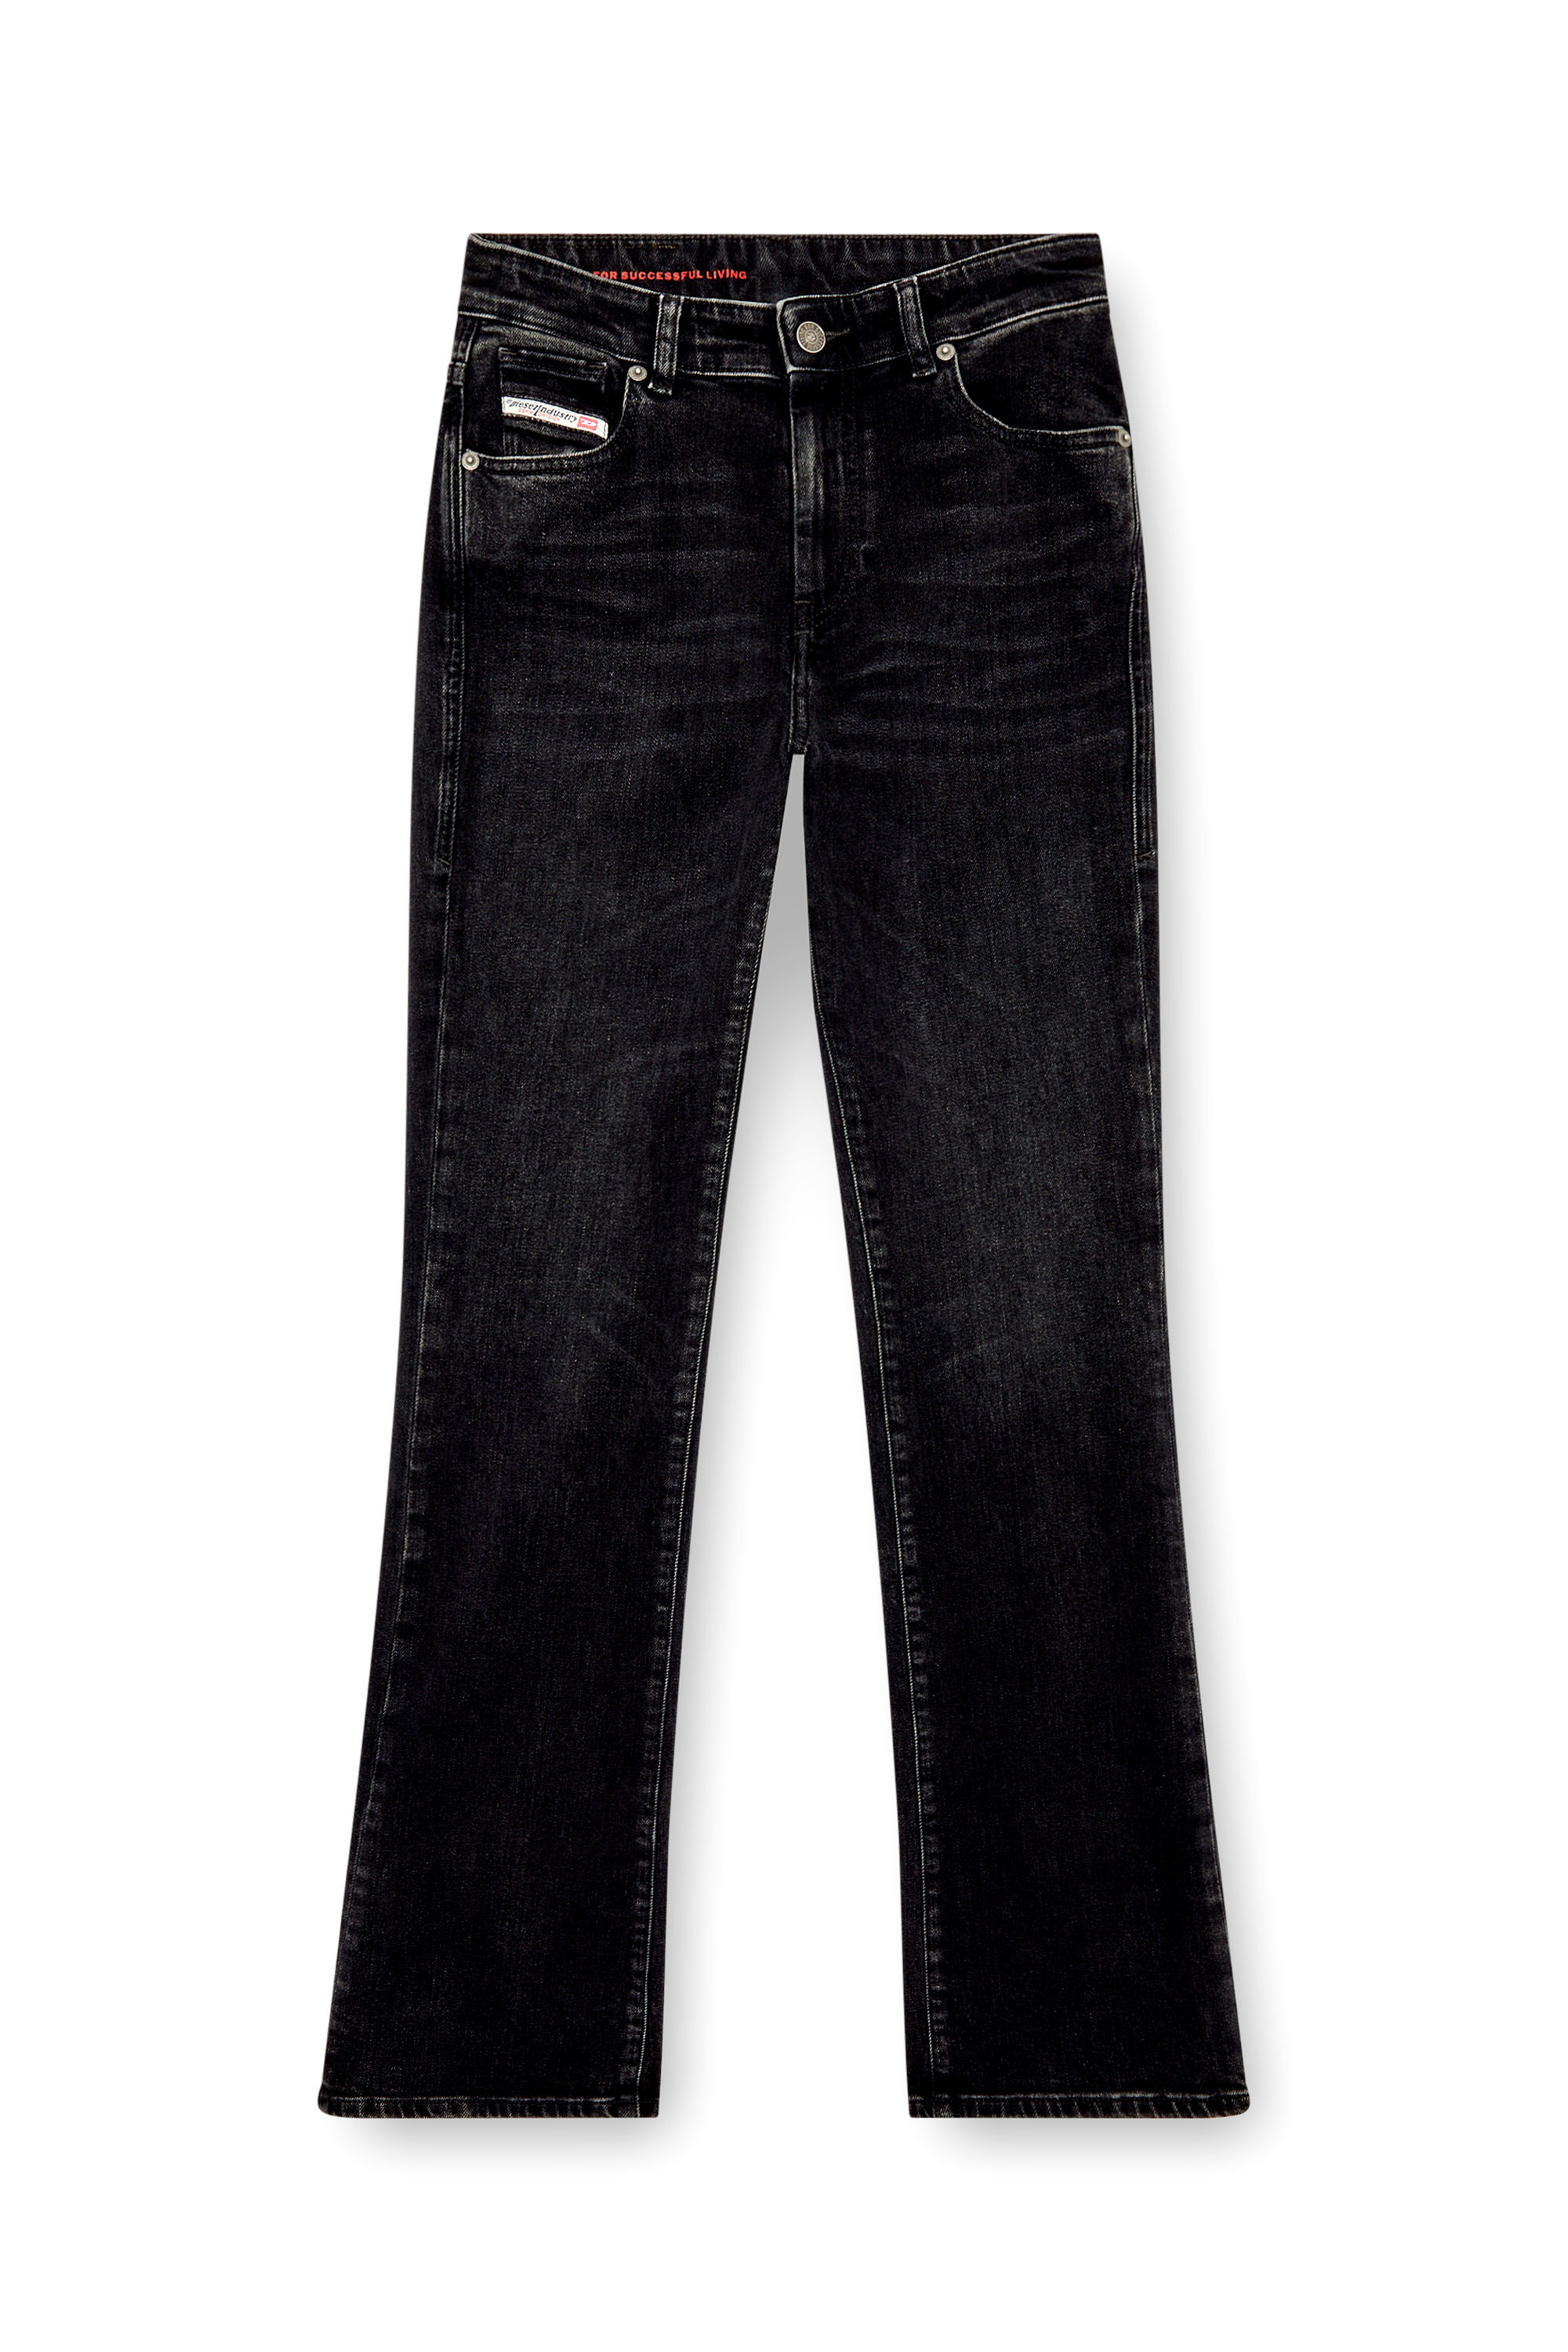 Diesel - Femme Bootcut and Flare Jeans 2003 D-Escription 09I30, Noir/Gris foncé - Image 5